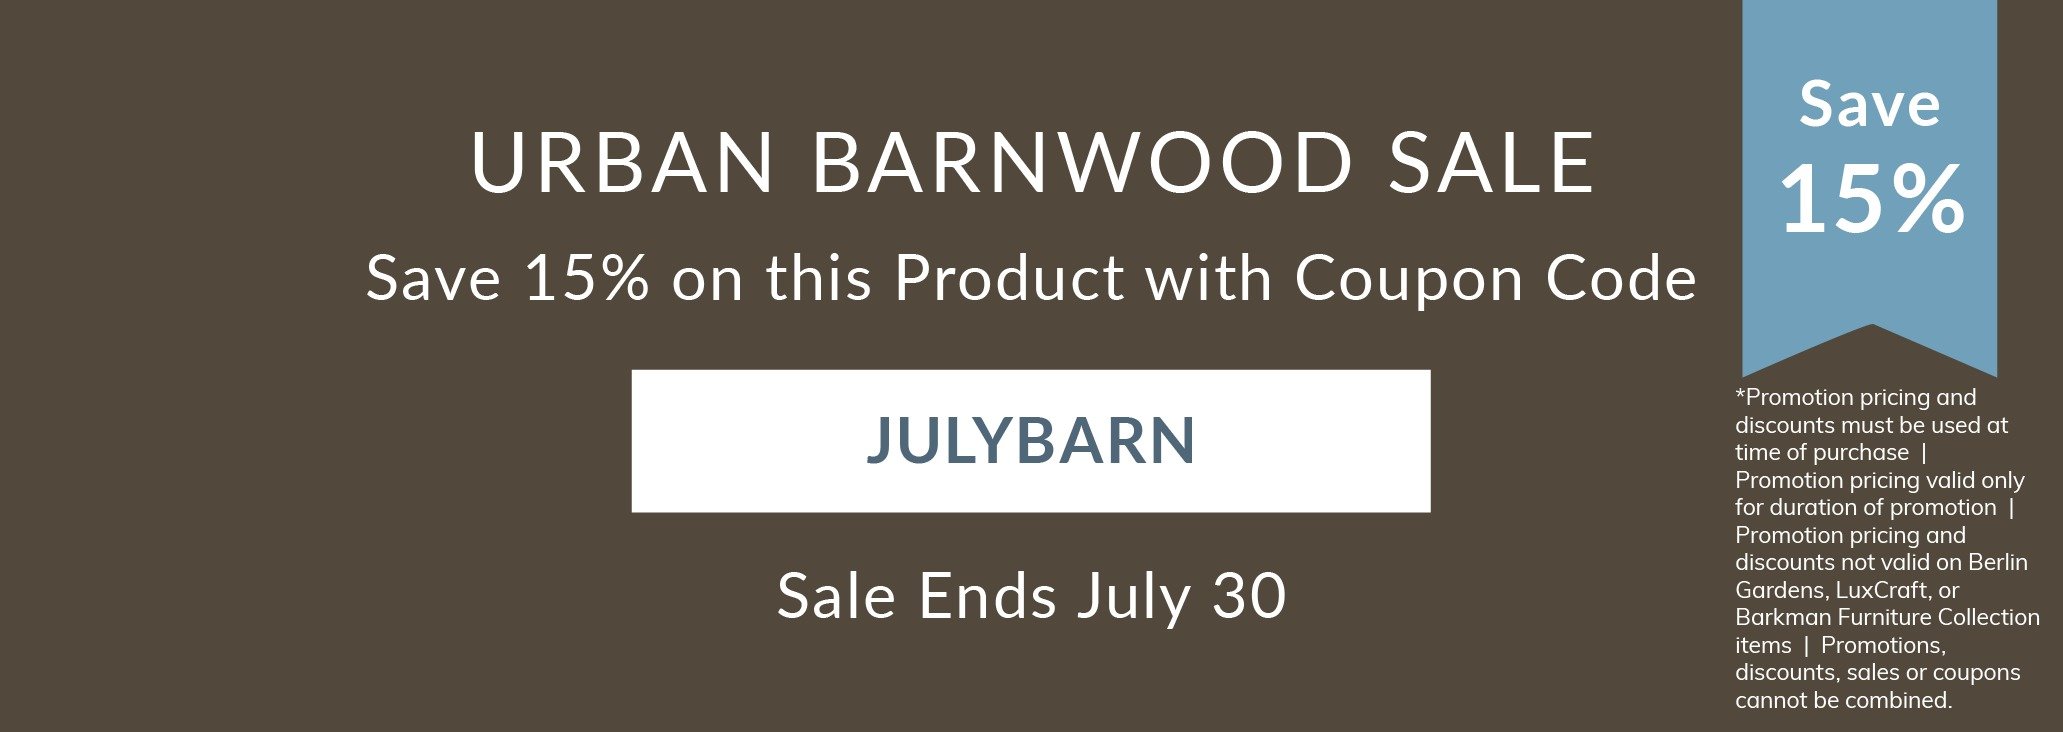 Urban Barnwood Sale